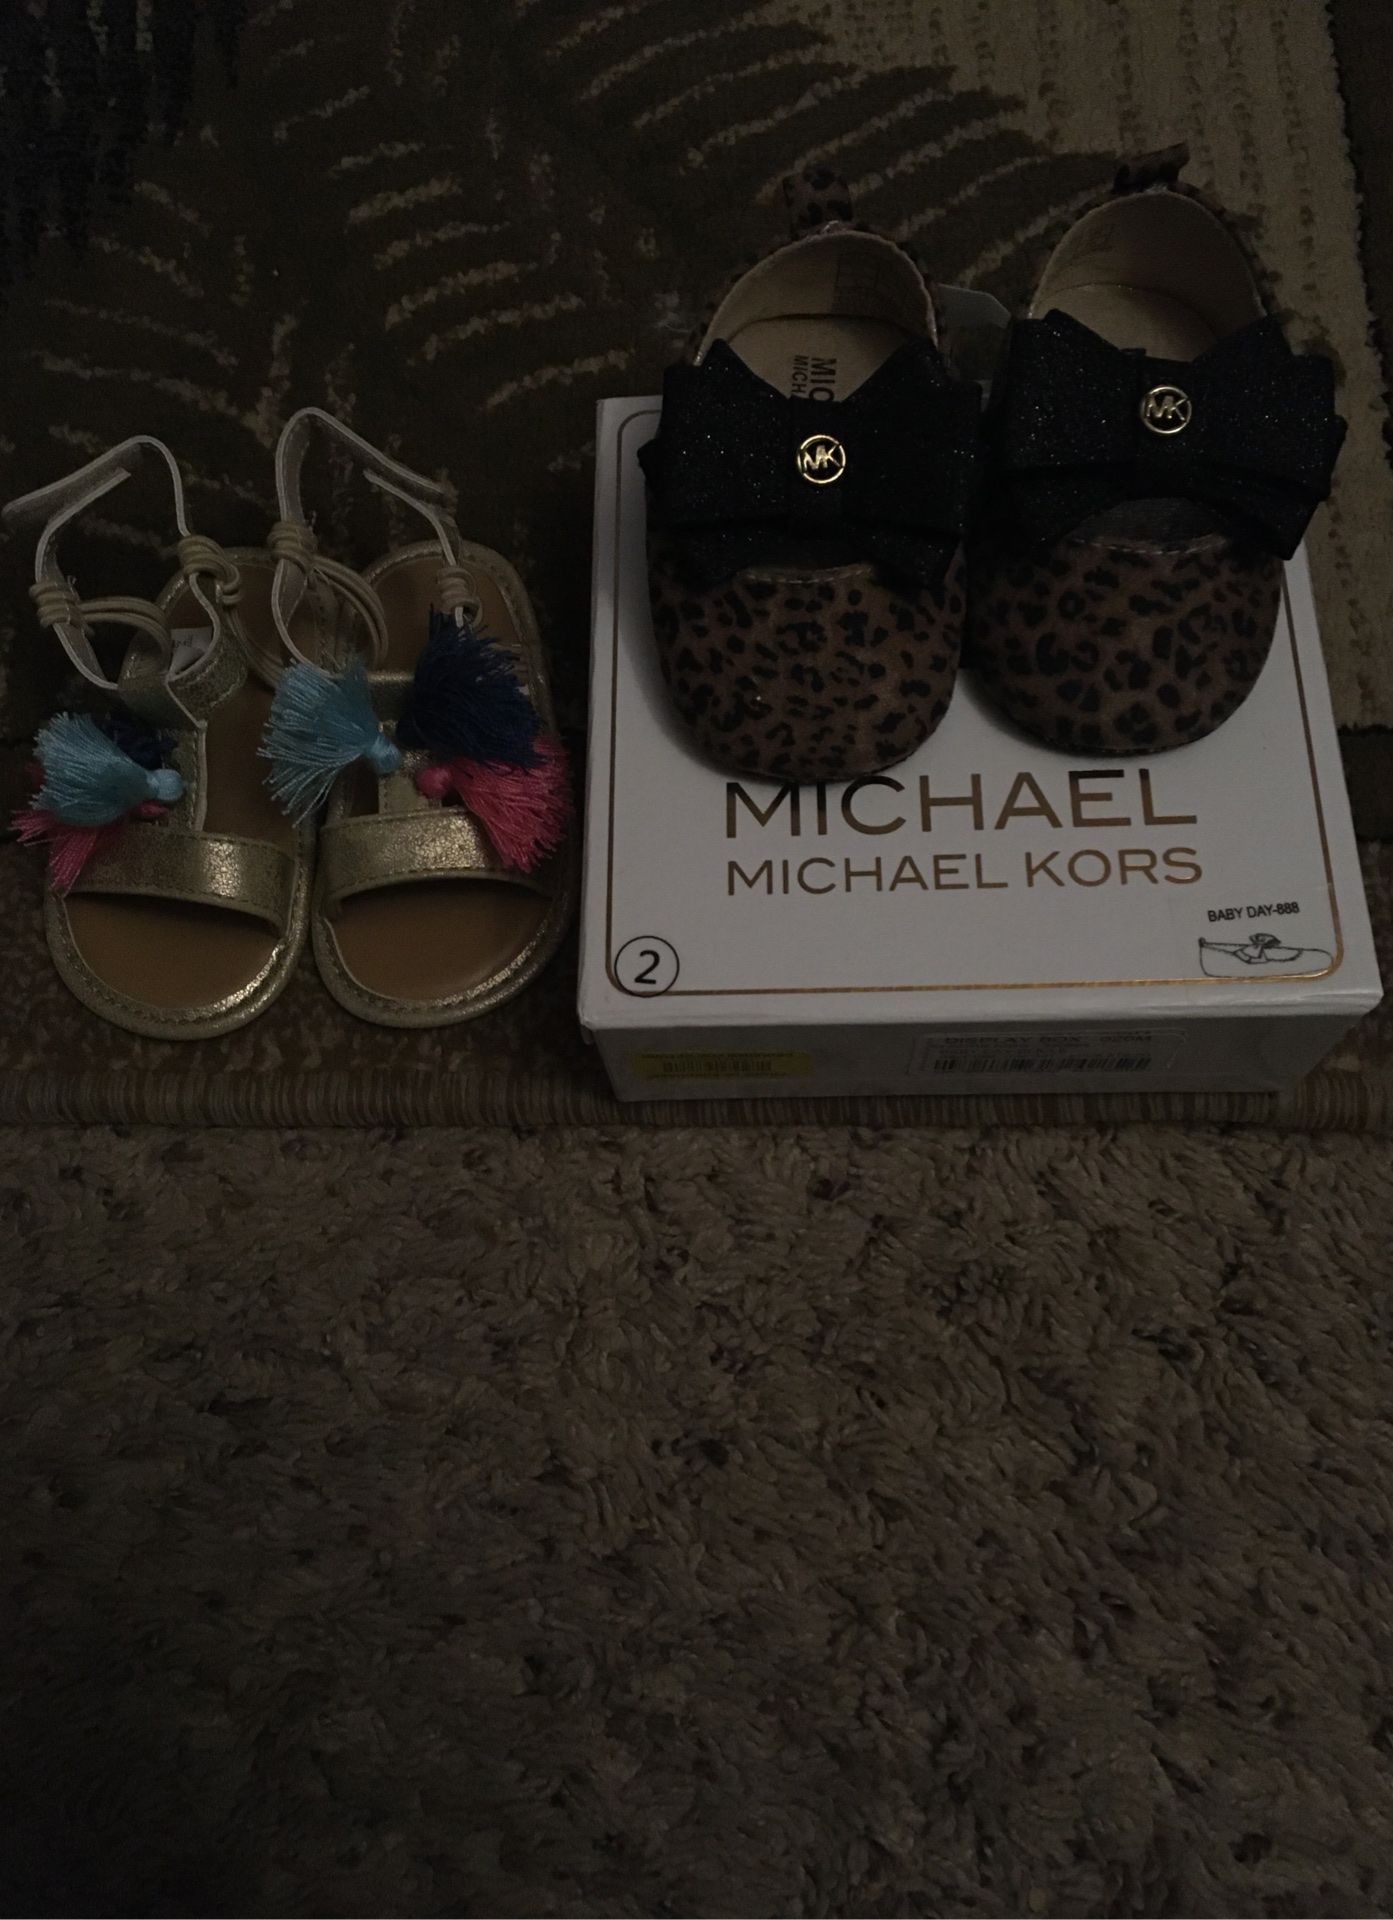 1 Michael kors shoes and 1 sandal